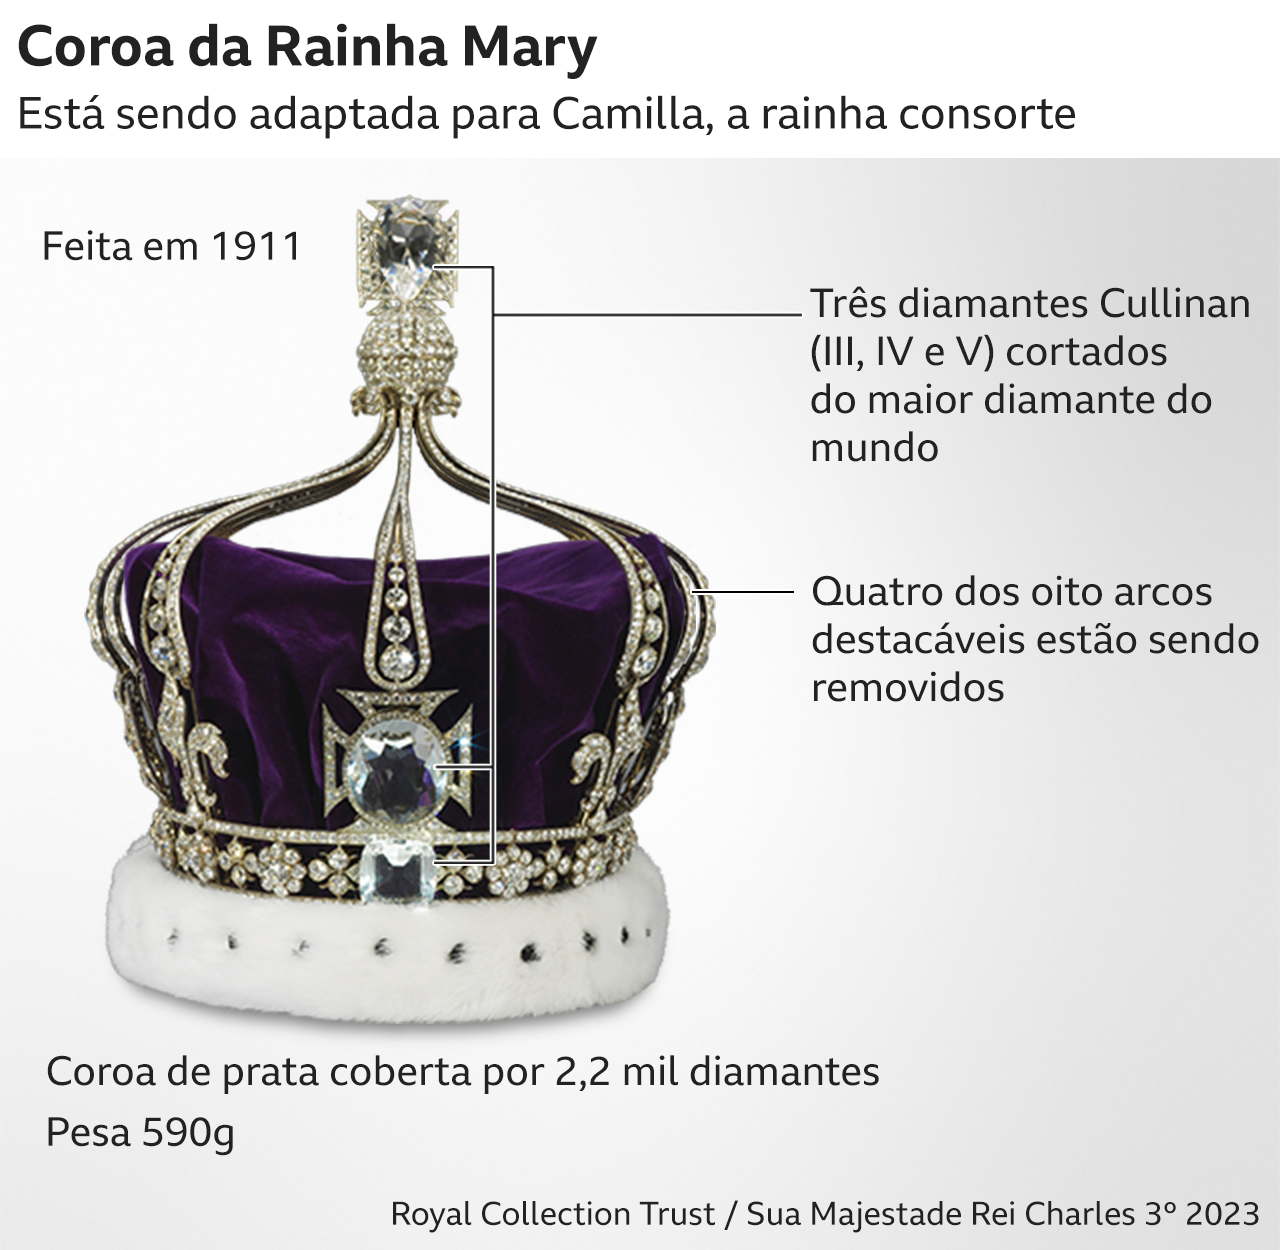 Detalhes da Coroa da Rainha Mary 